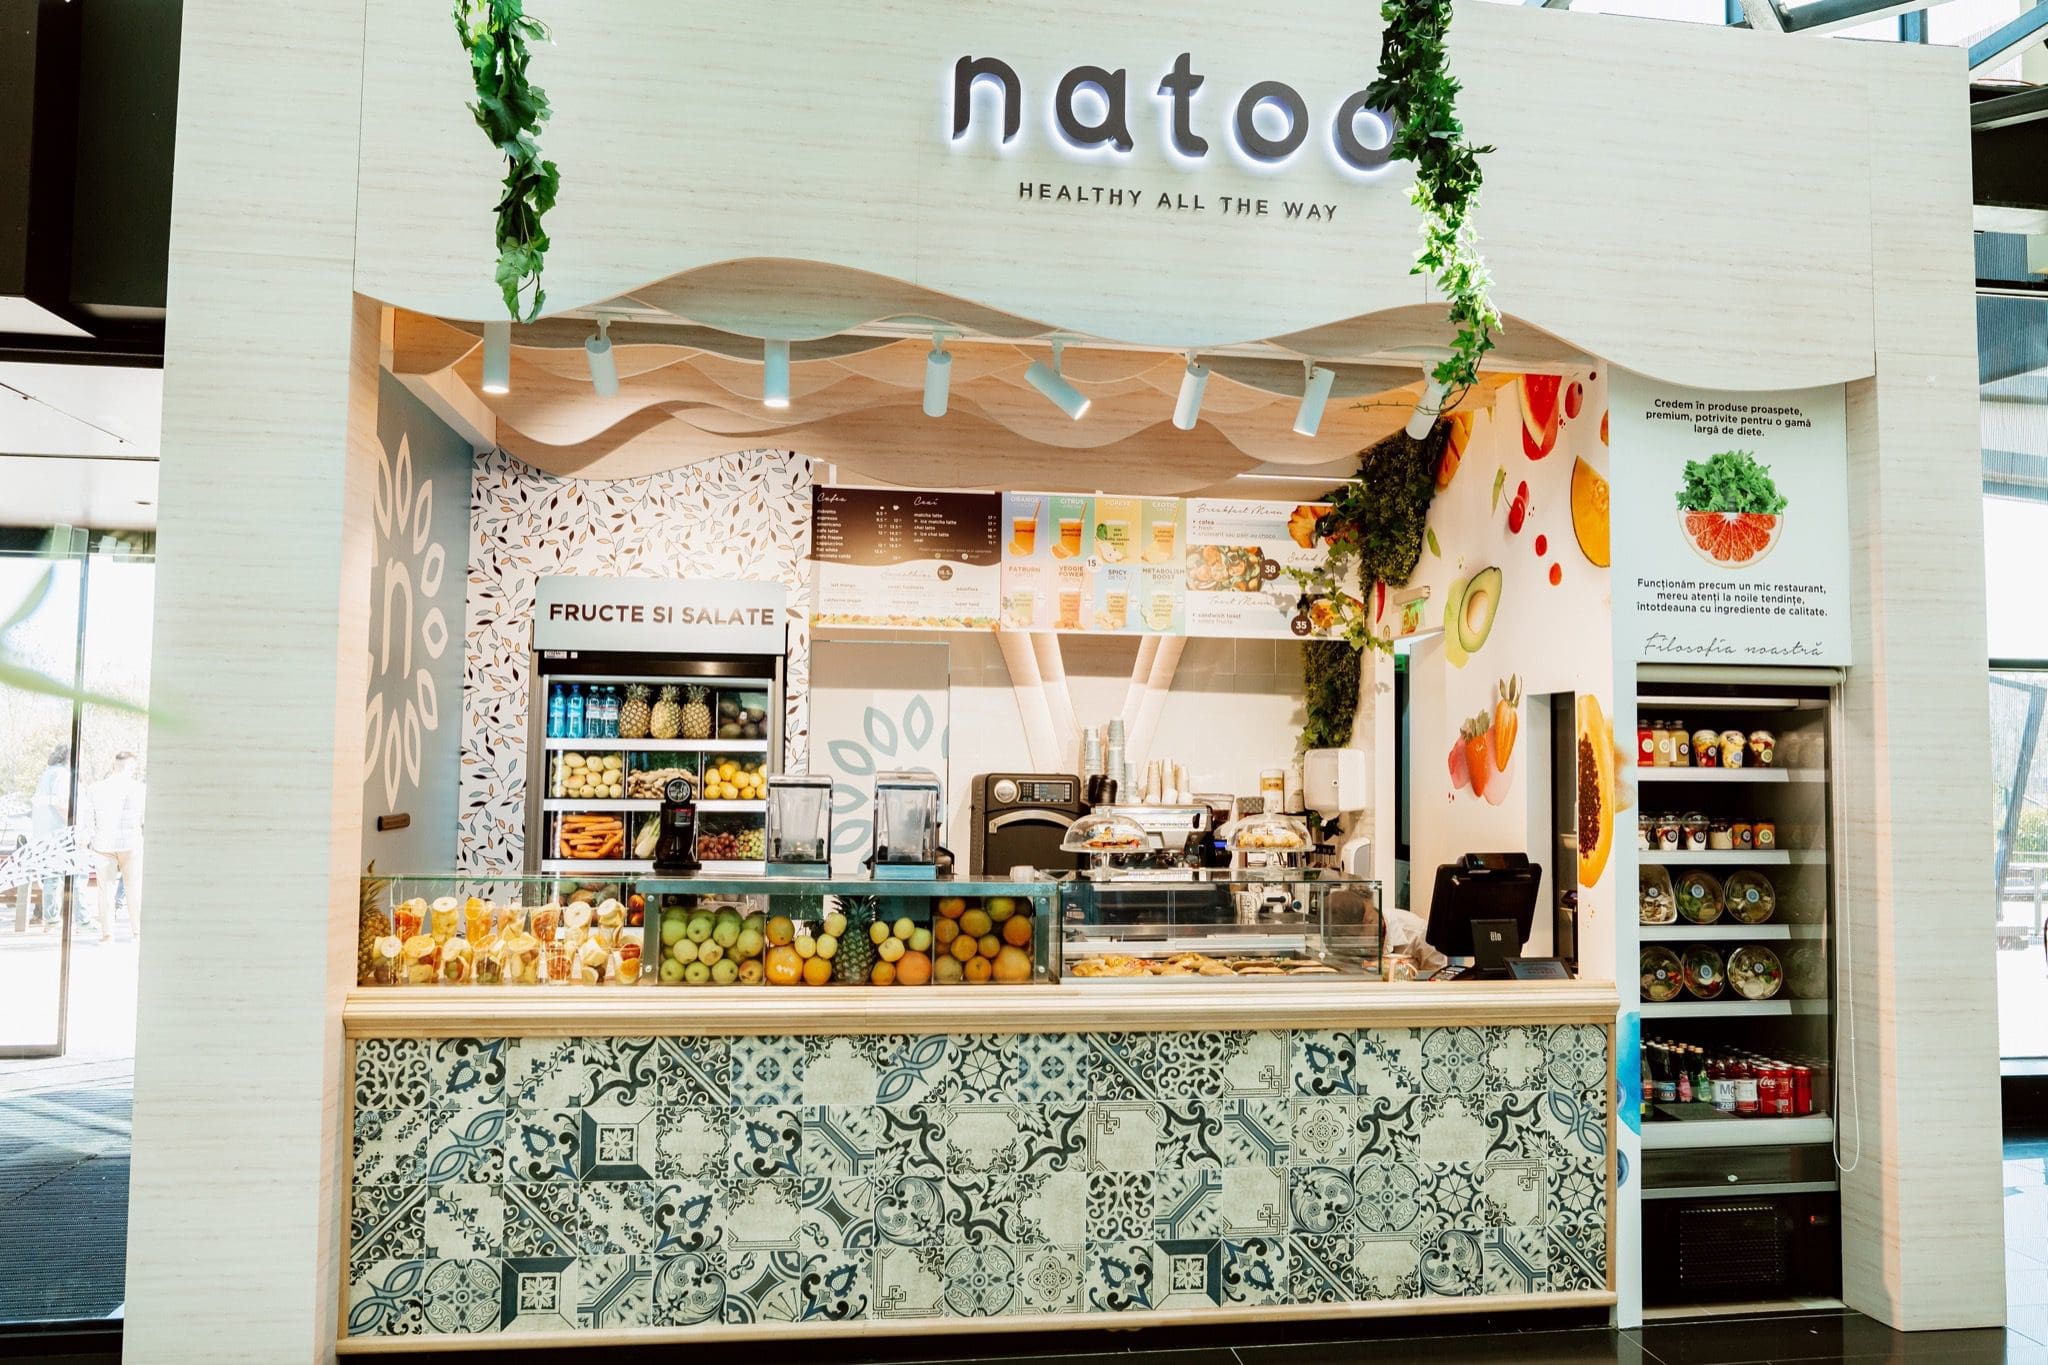 Natoo - Primul restaurant Natoo în ParkLake Shopping Center